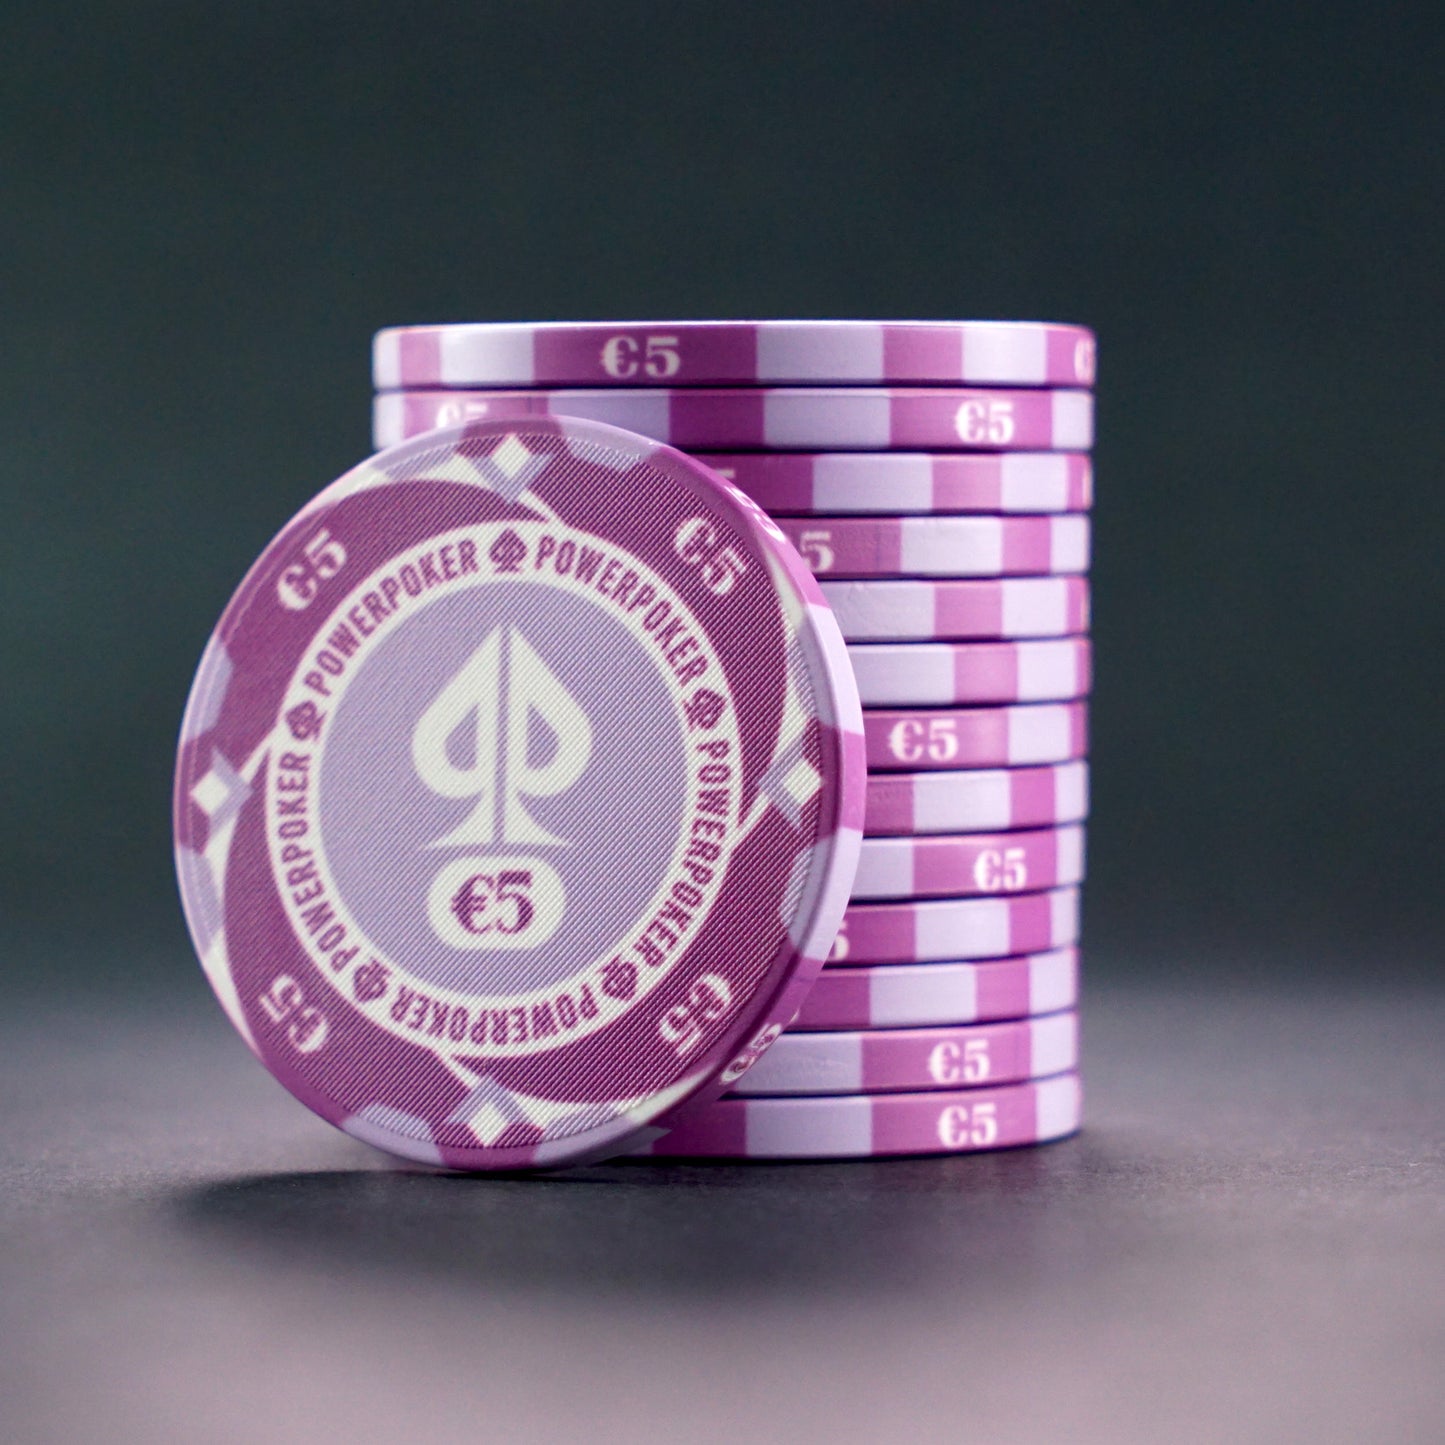 Pokerkoffer Komplett Set - "Hurricane Edition" CASH 500